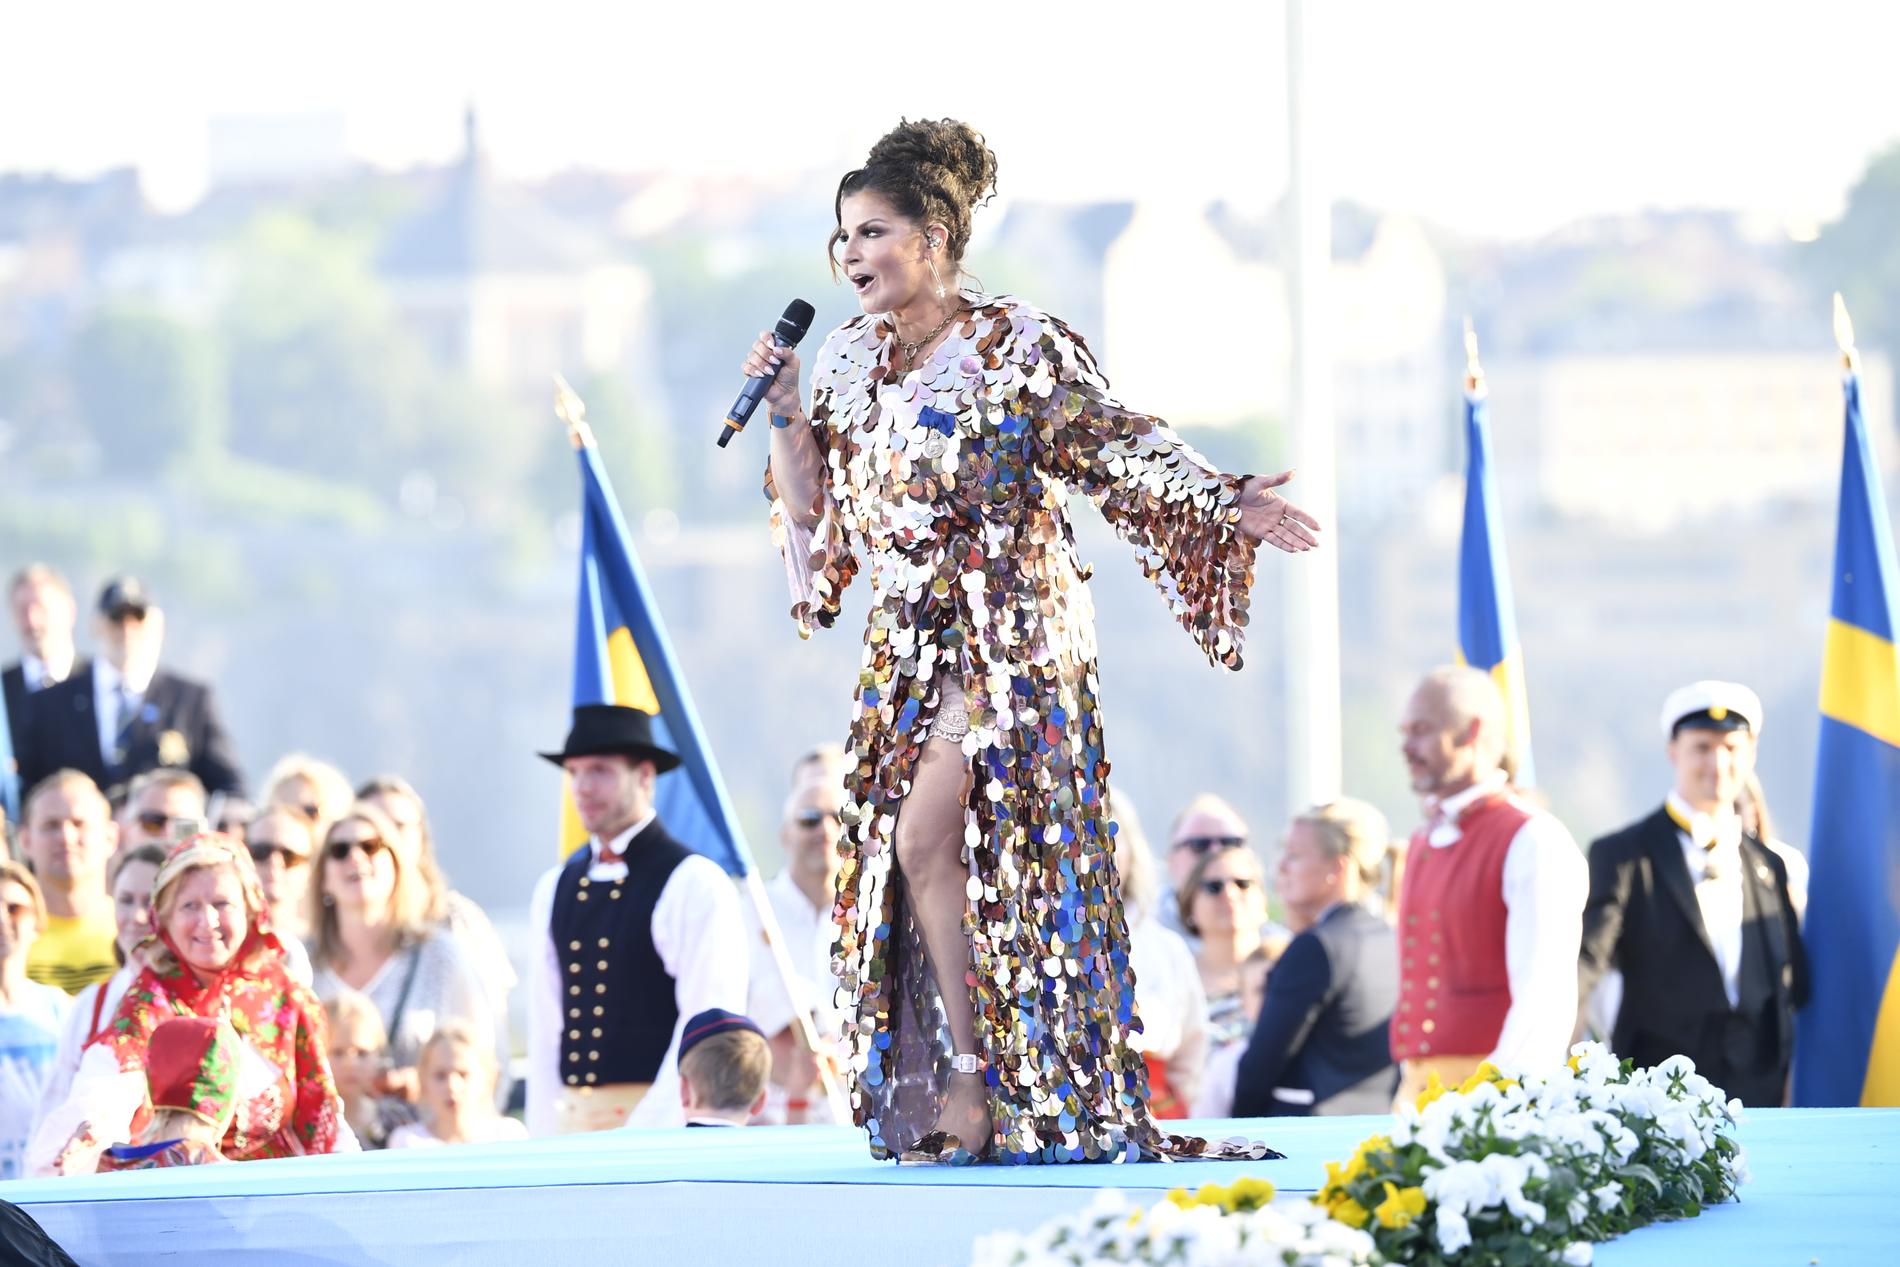 Carola firar nationaldagen med sång på Sollidenscenen på Skansen.